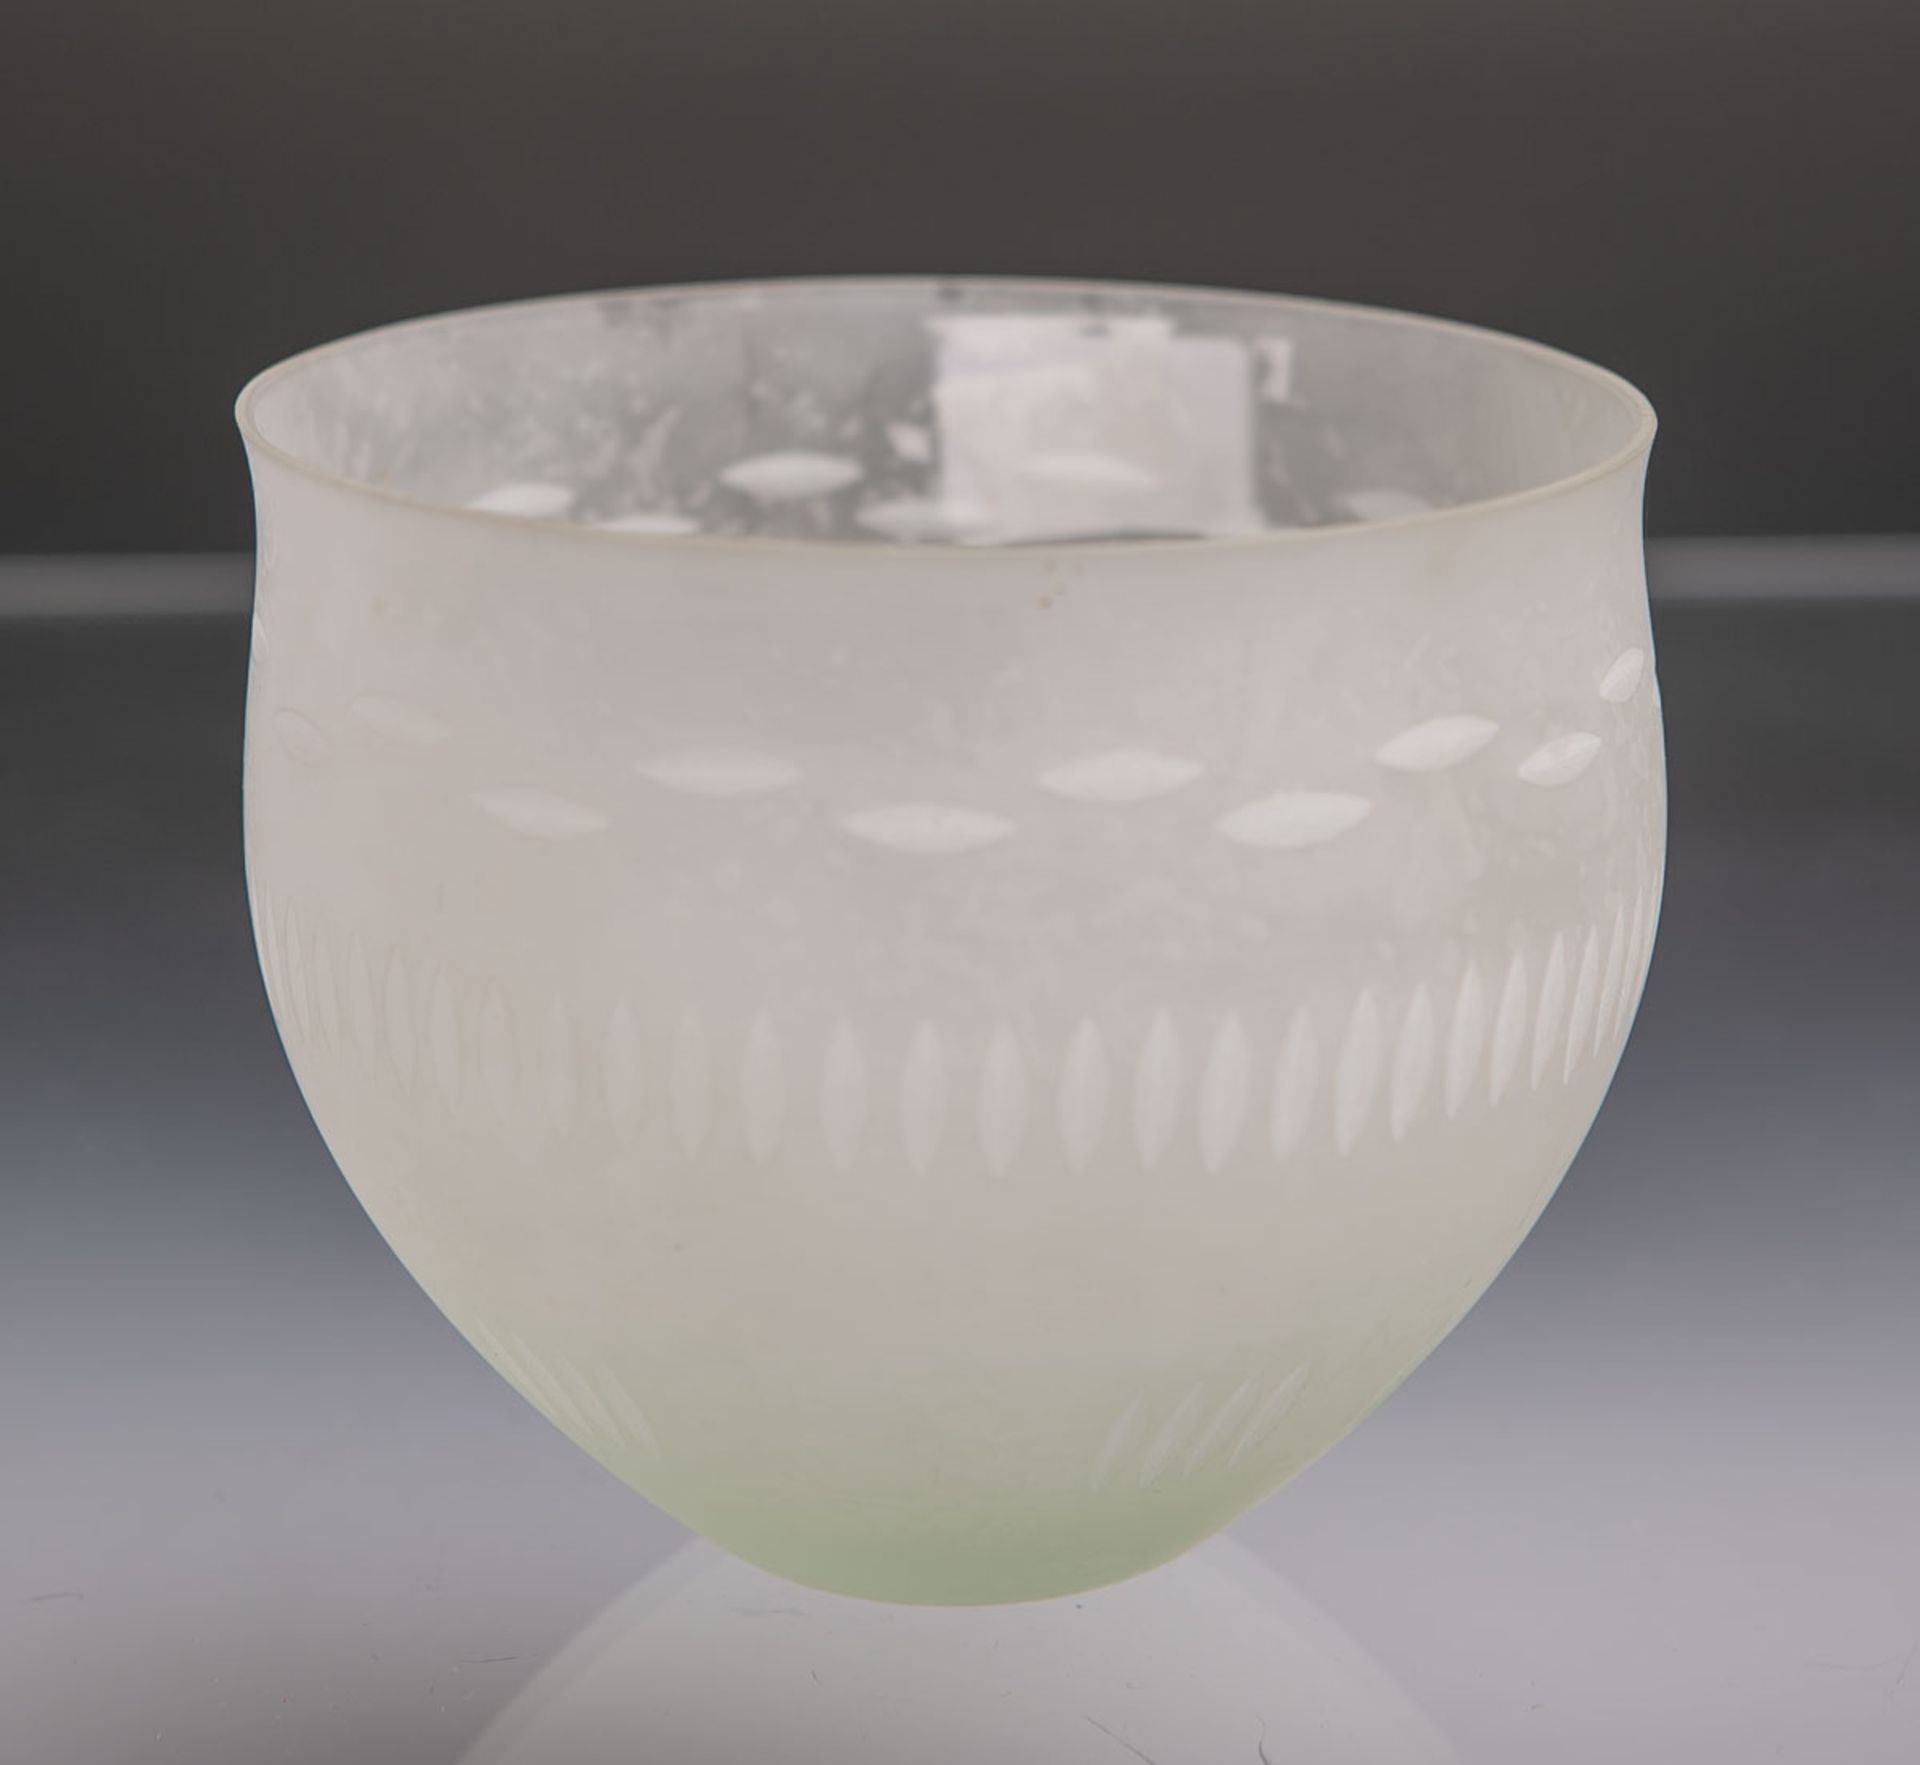 Kl. Glasschüssel (20. Jh.), glockenförmiger Korpus, weisses Milchglas, umlaufend geschliffen,